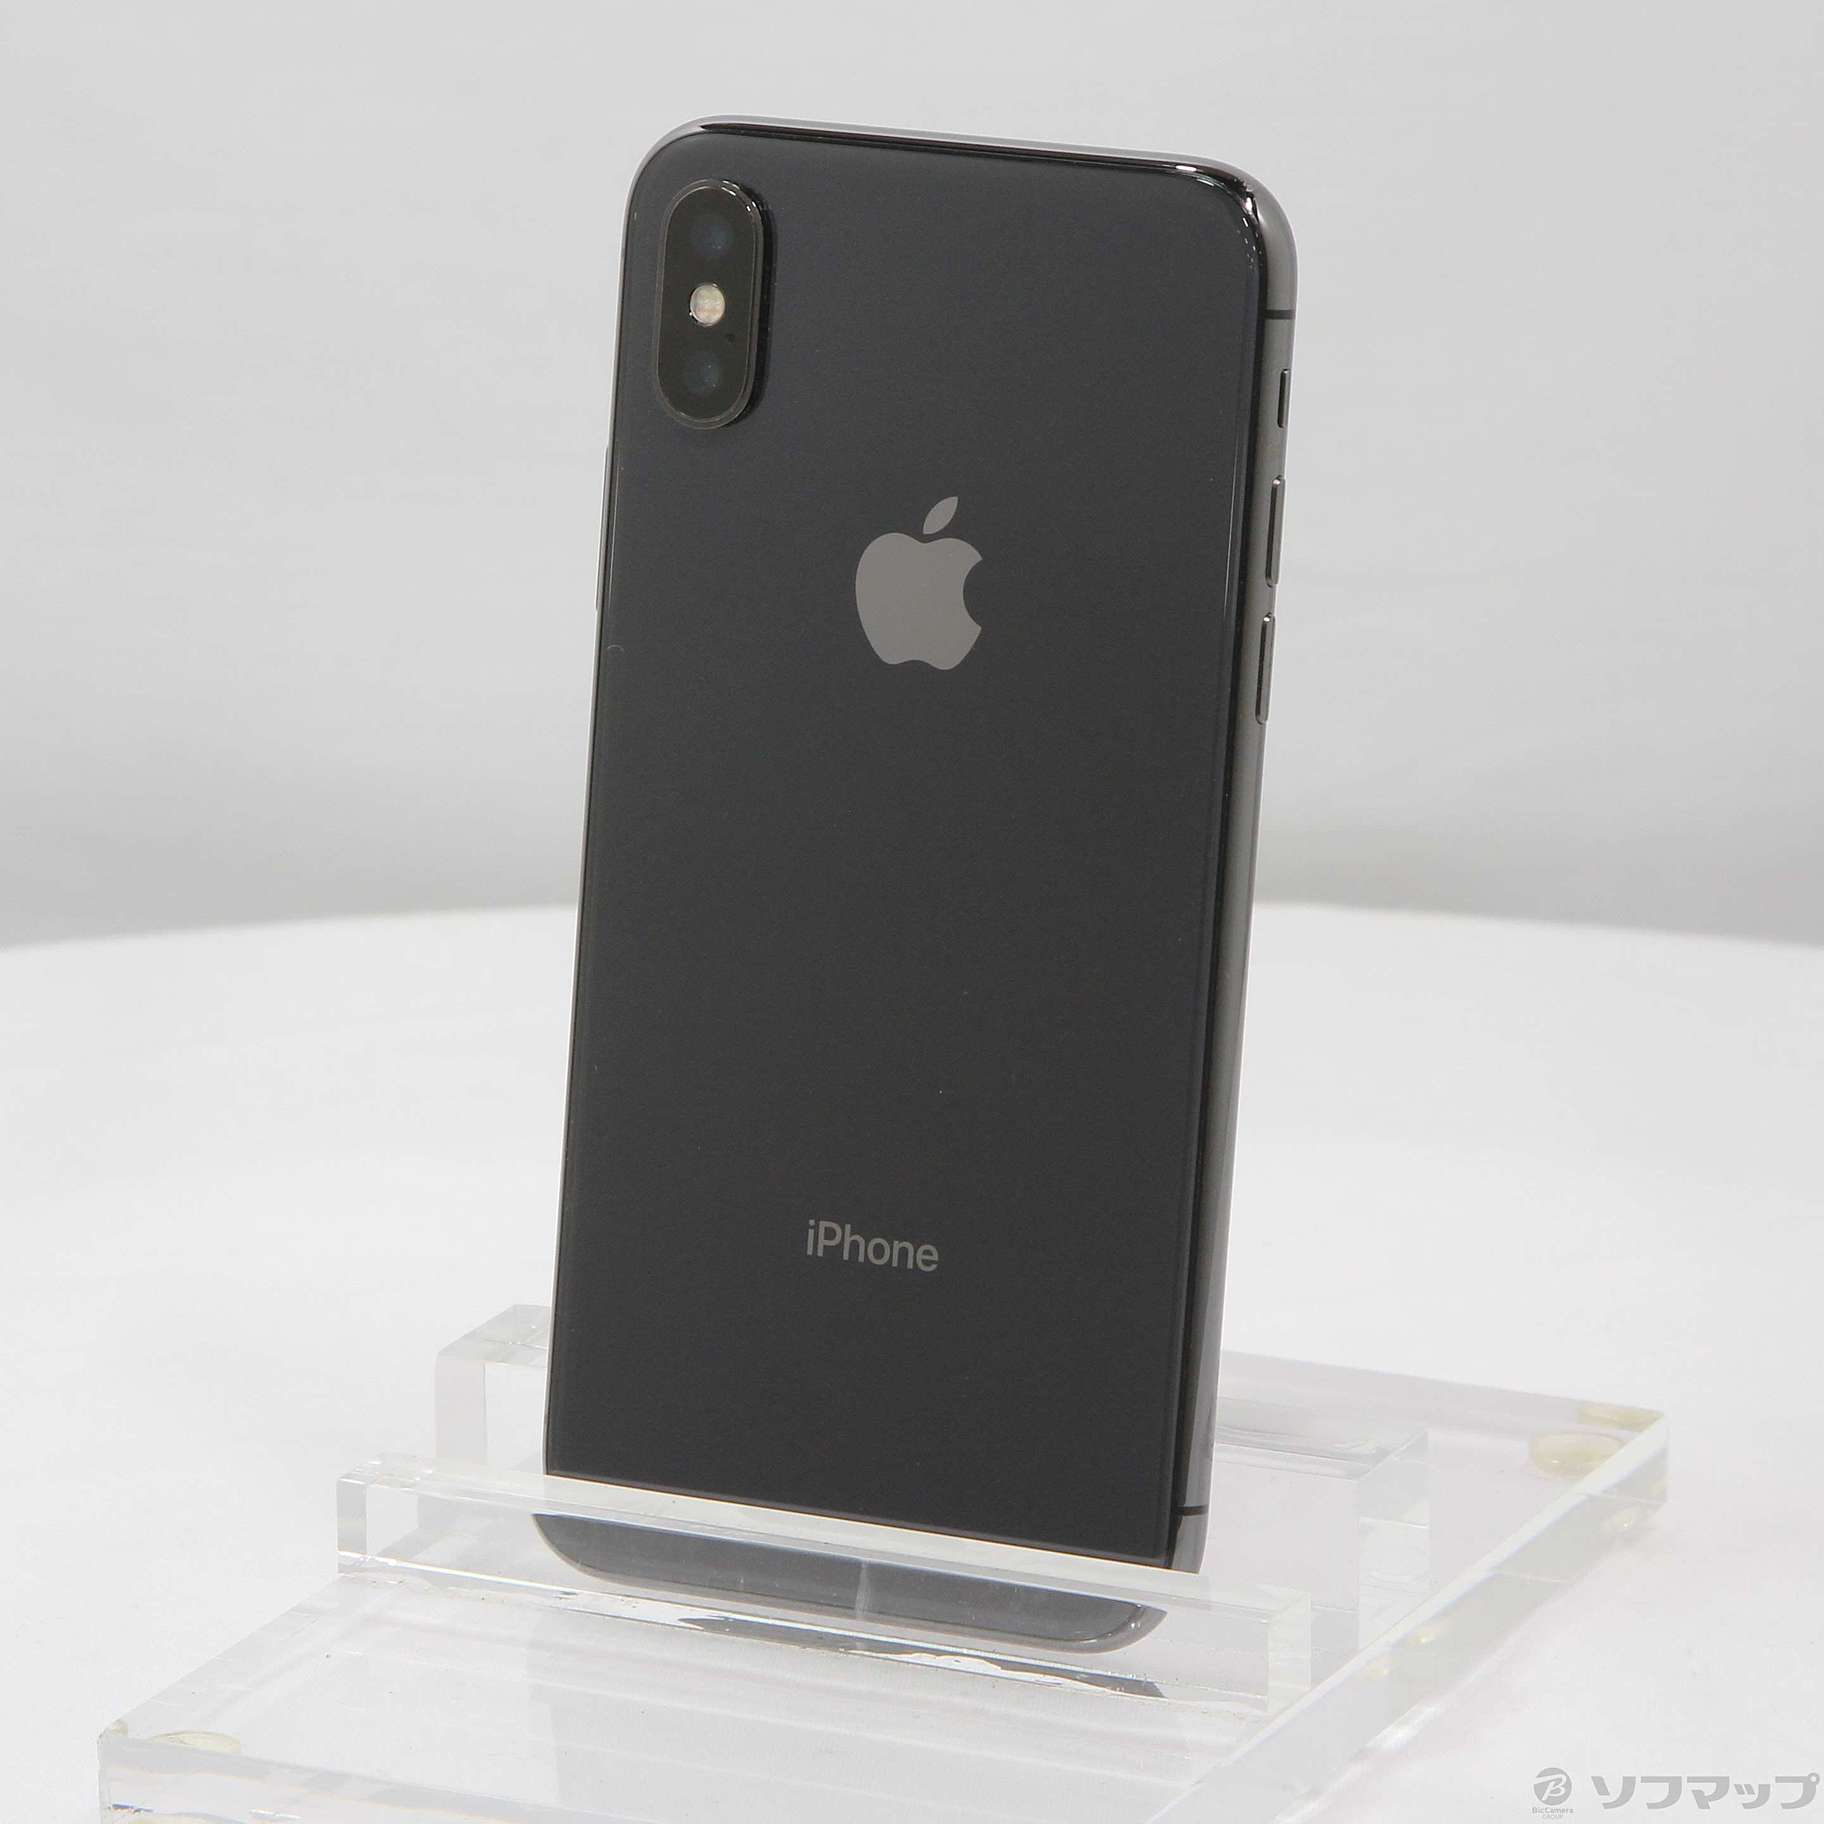 Apple iPhone X 256GB Space Grey SIMフリー